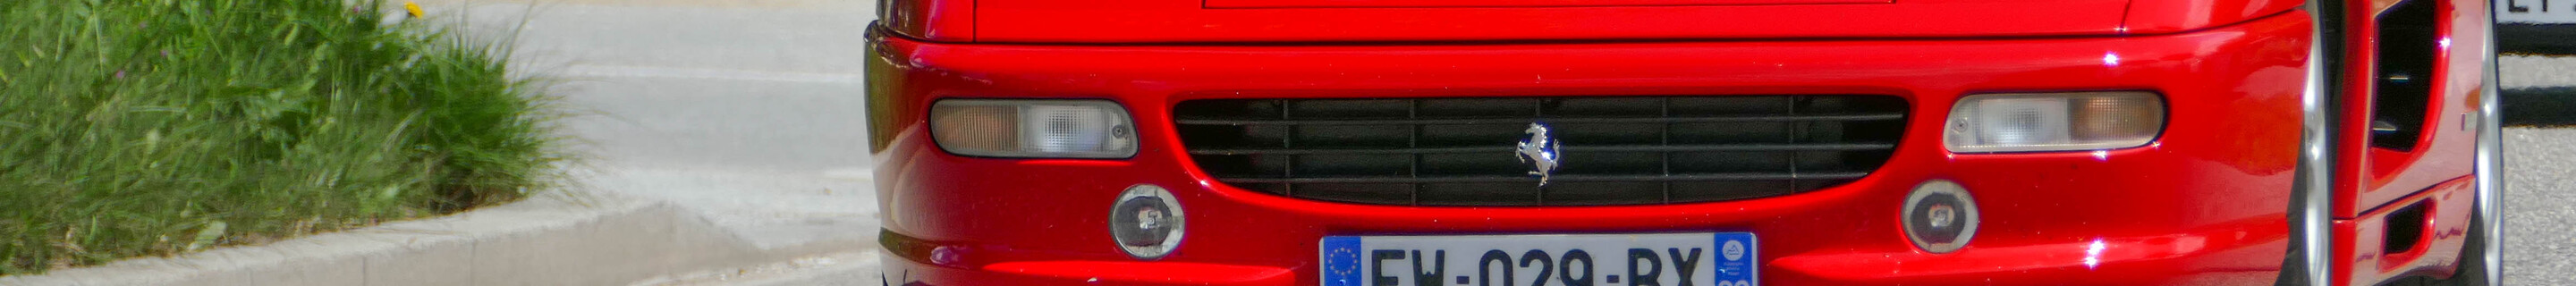 Ferrari F355 GTS